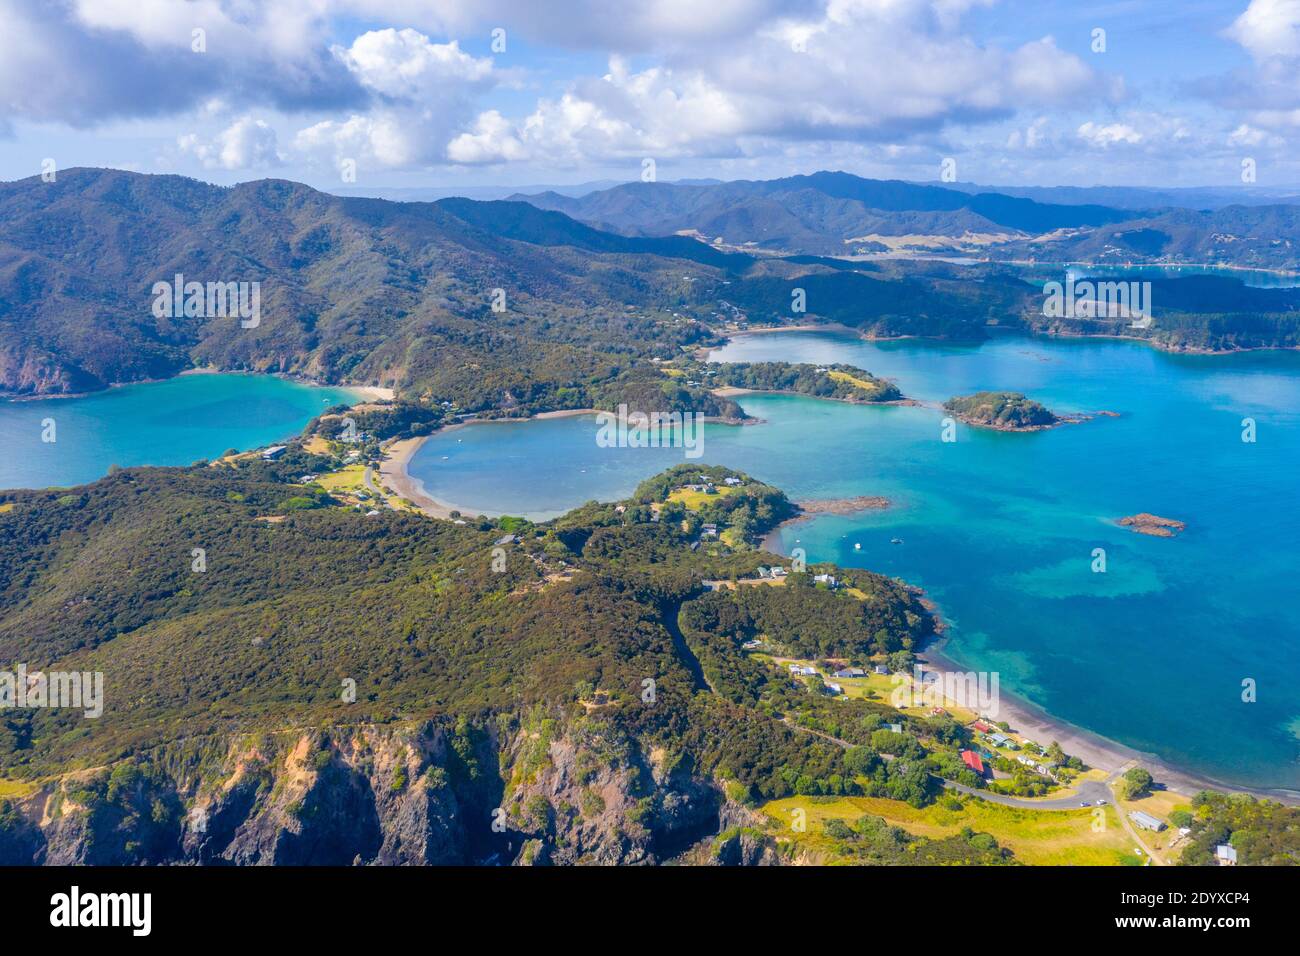 Aerial view of Kaimarama bay at bay of islands at New Zealand Stock Photo